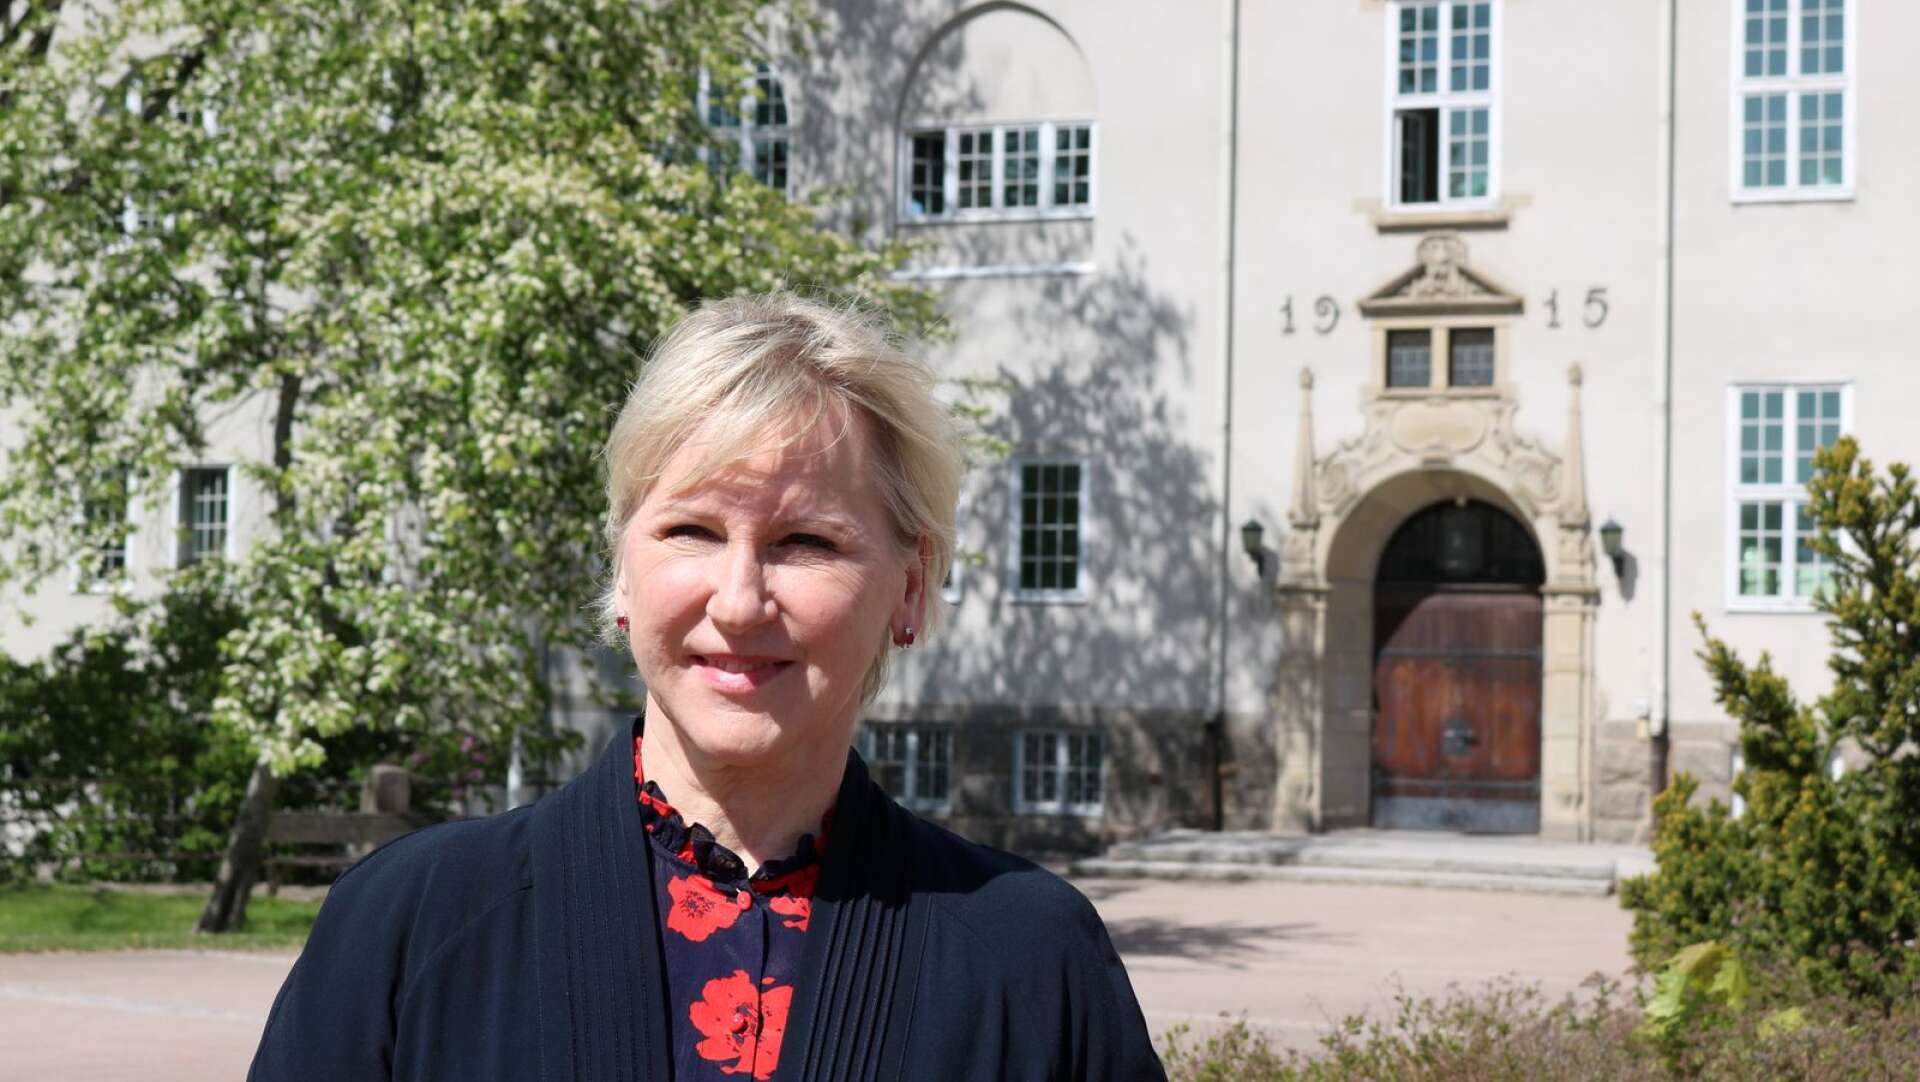 Utrikesminister Margot Wallström besökte Brogårdsgymnasiet i Kristinehamn under fredagen.